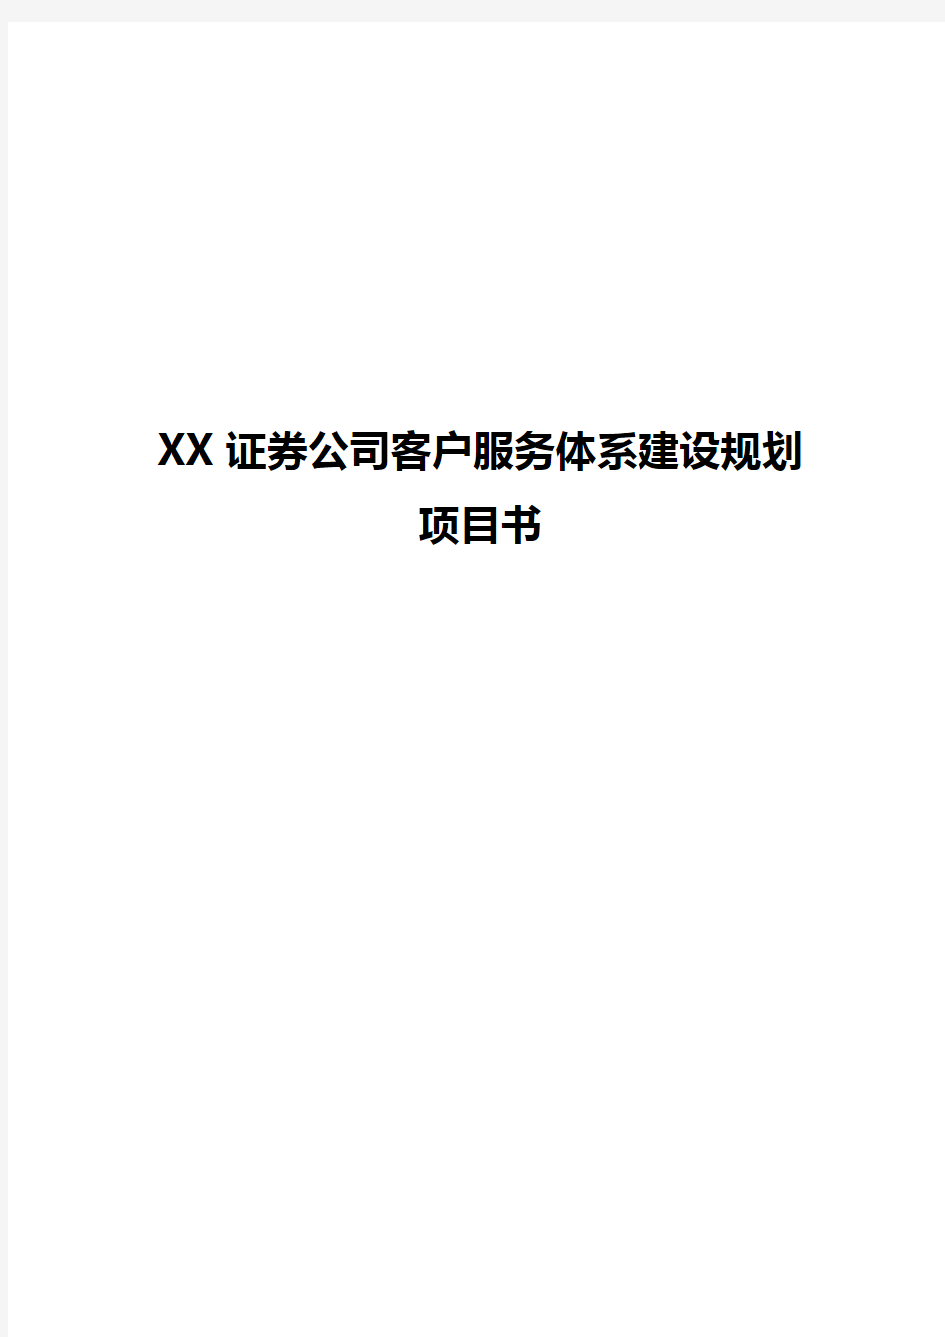 【推荐】XX证券公司客户服务体系建设规划项目建议书